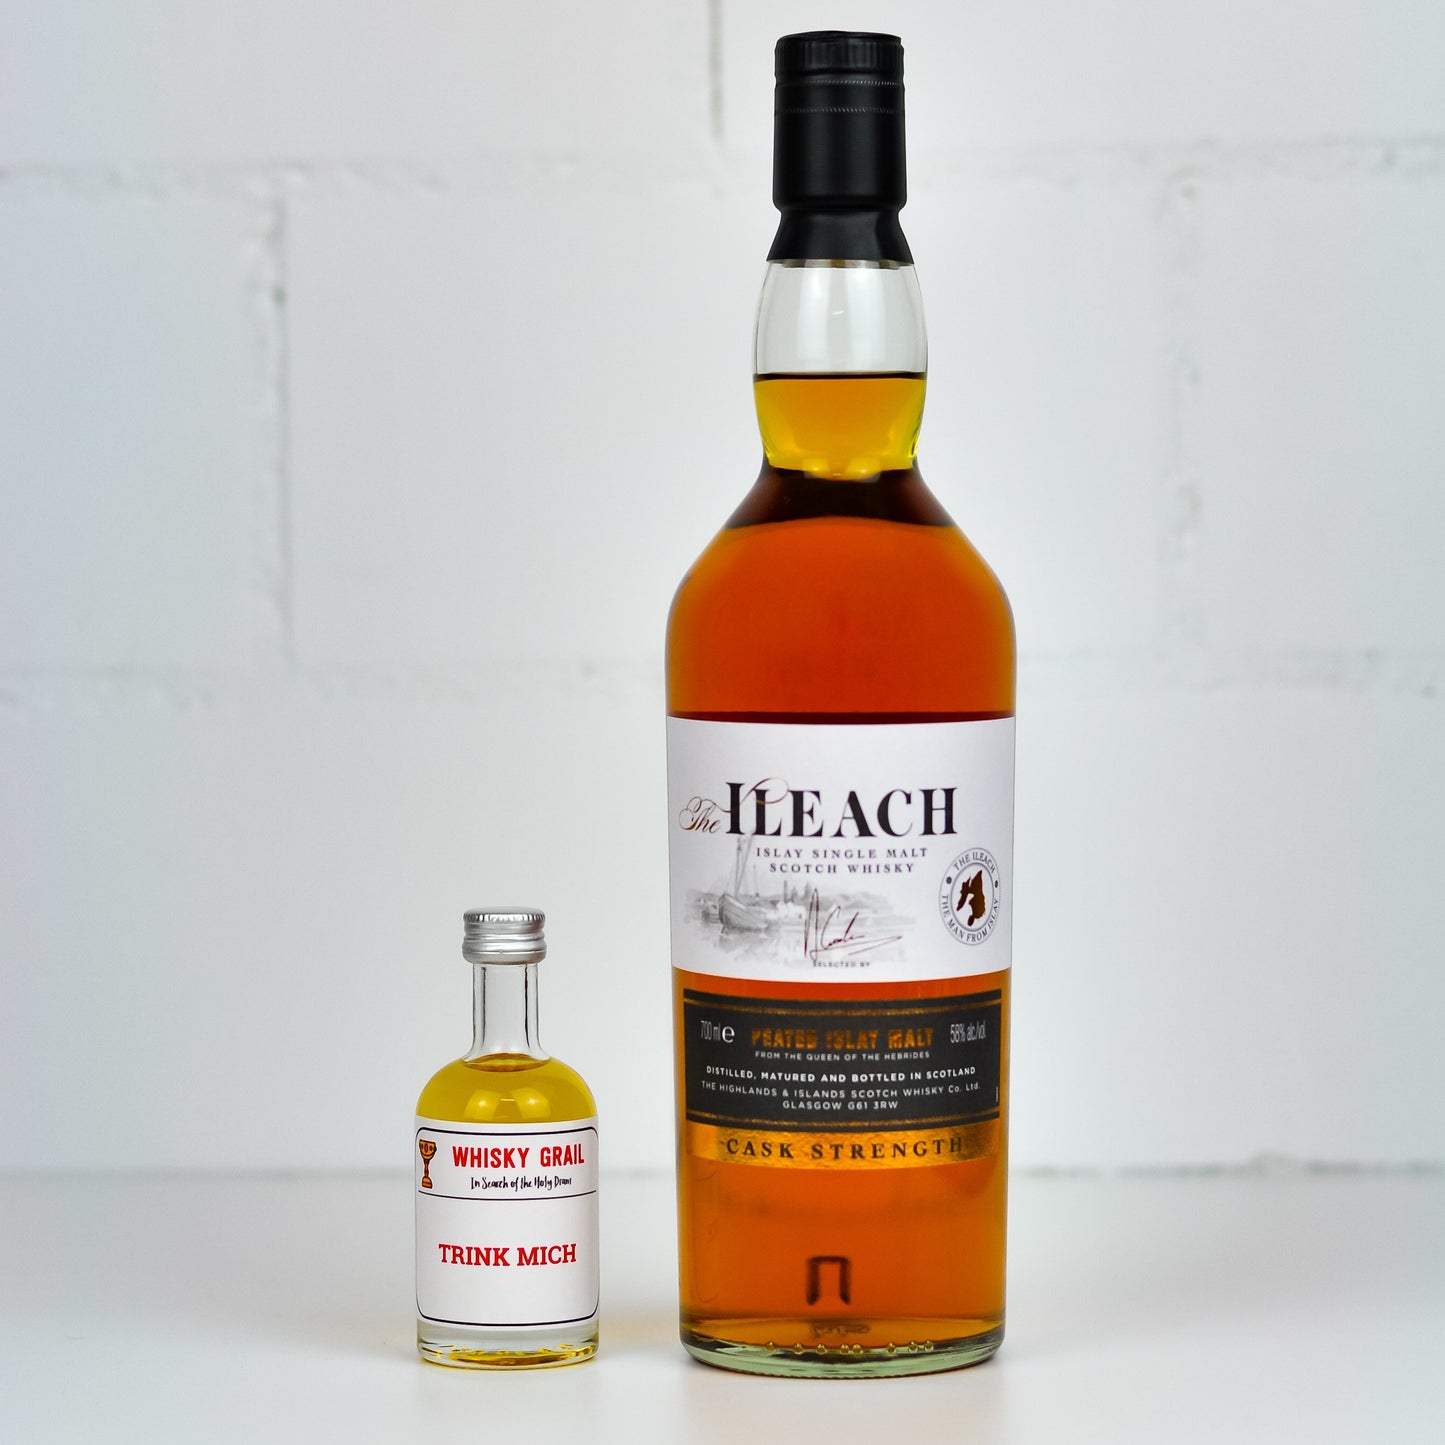 The Ileach Cask Strength - Whisky Grail